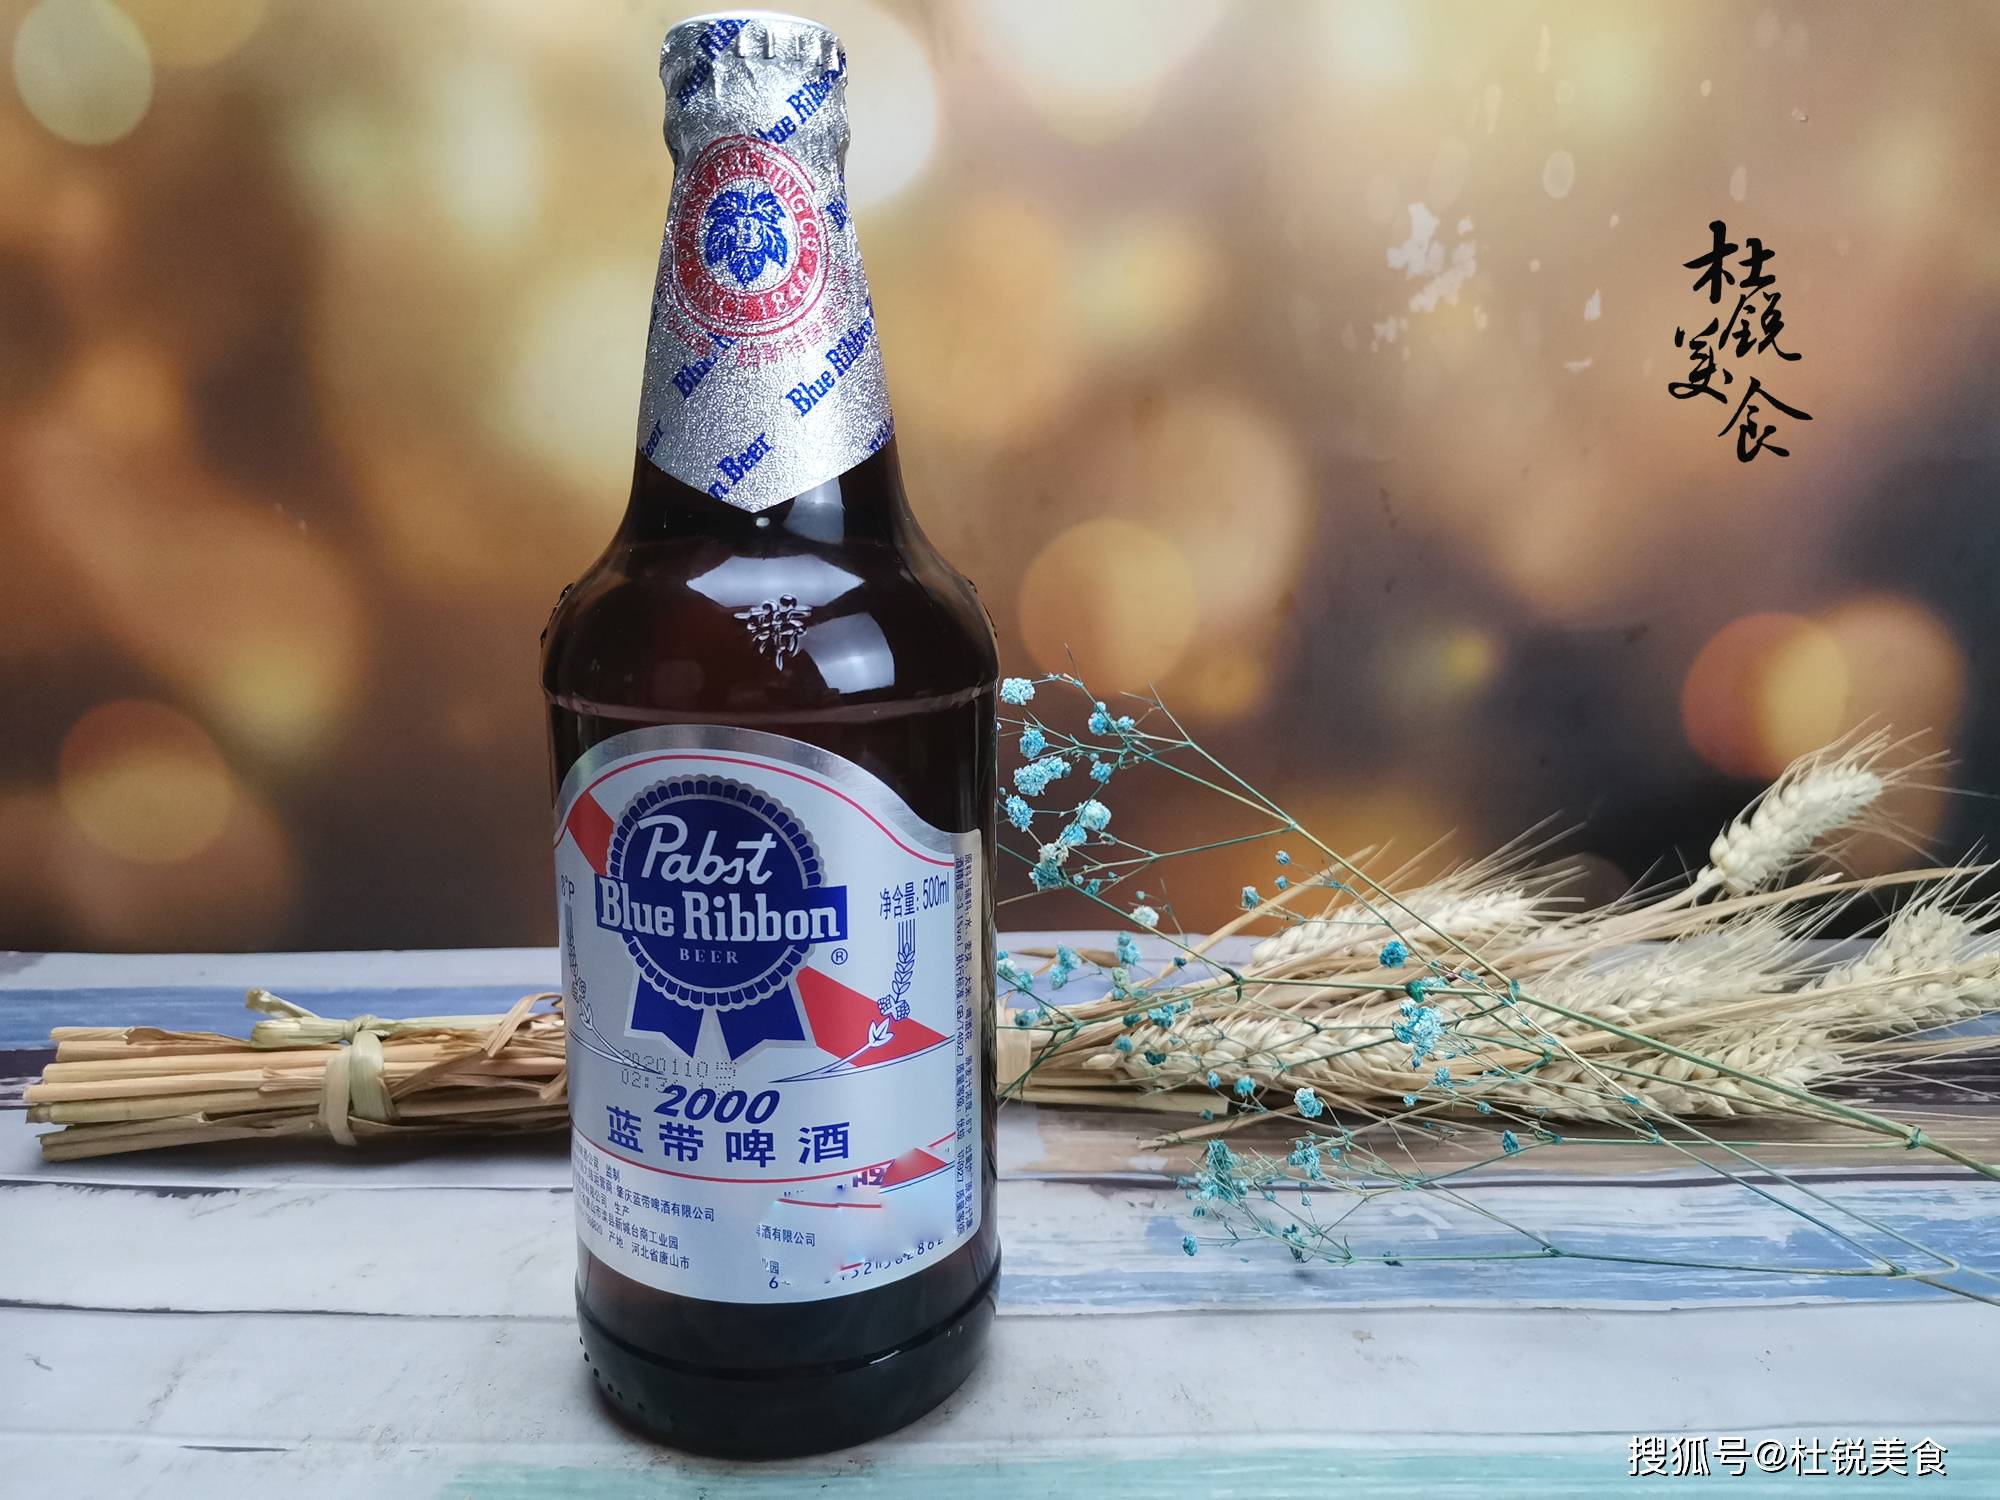 蓝带啤酒也是一种古老的啤酒品牌,始创于1844年,并于1990在广东肇庆